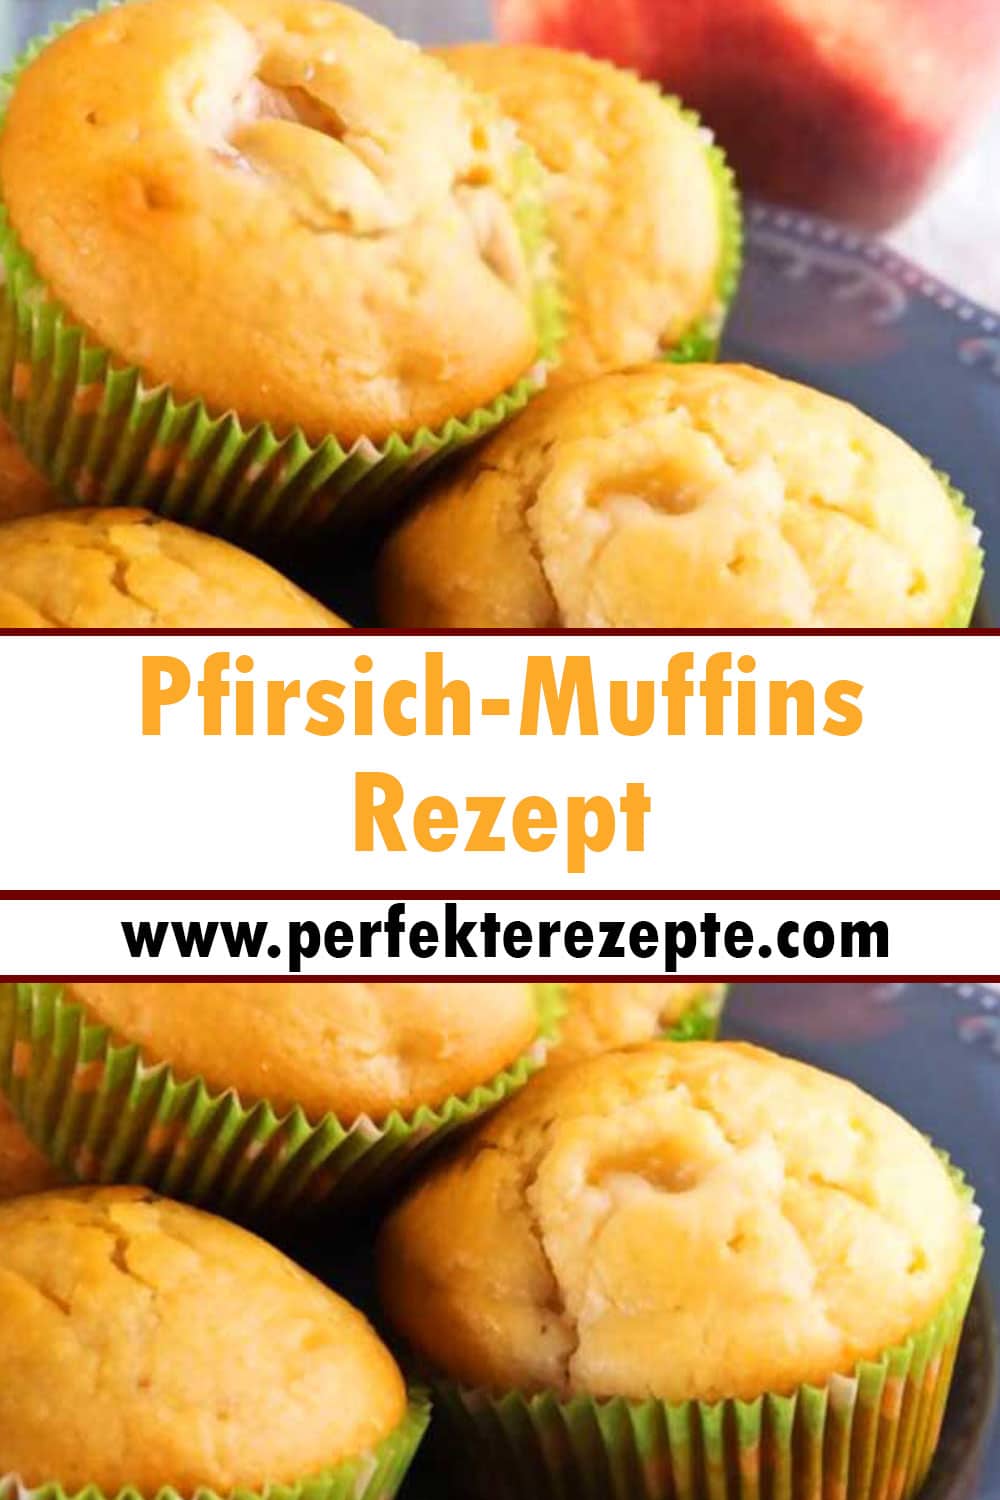 Pfirsich-Muffins Rezept